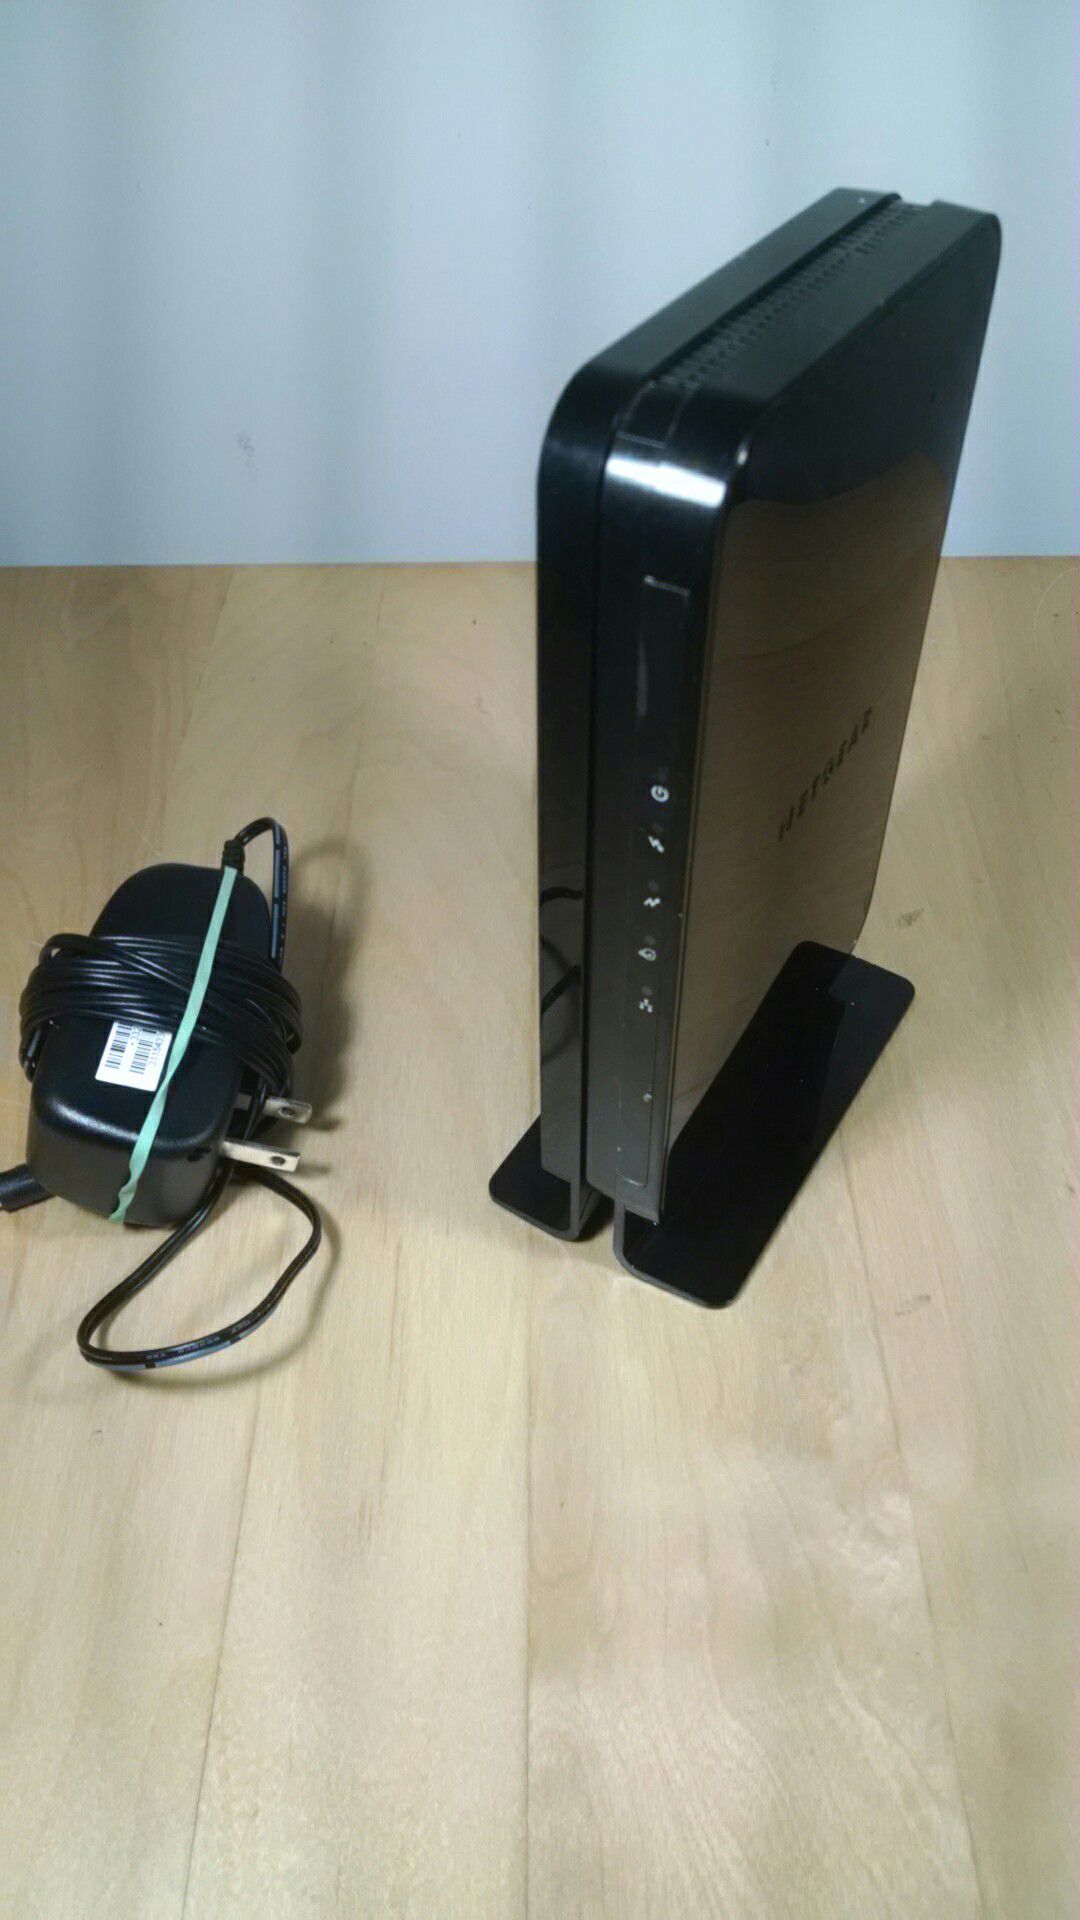 Cable modem - netgear cm500